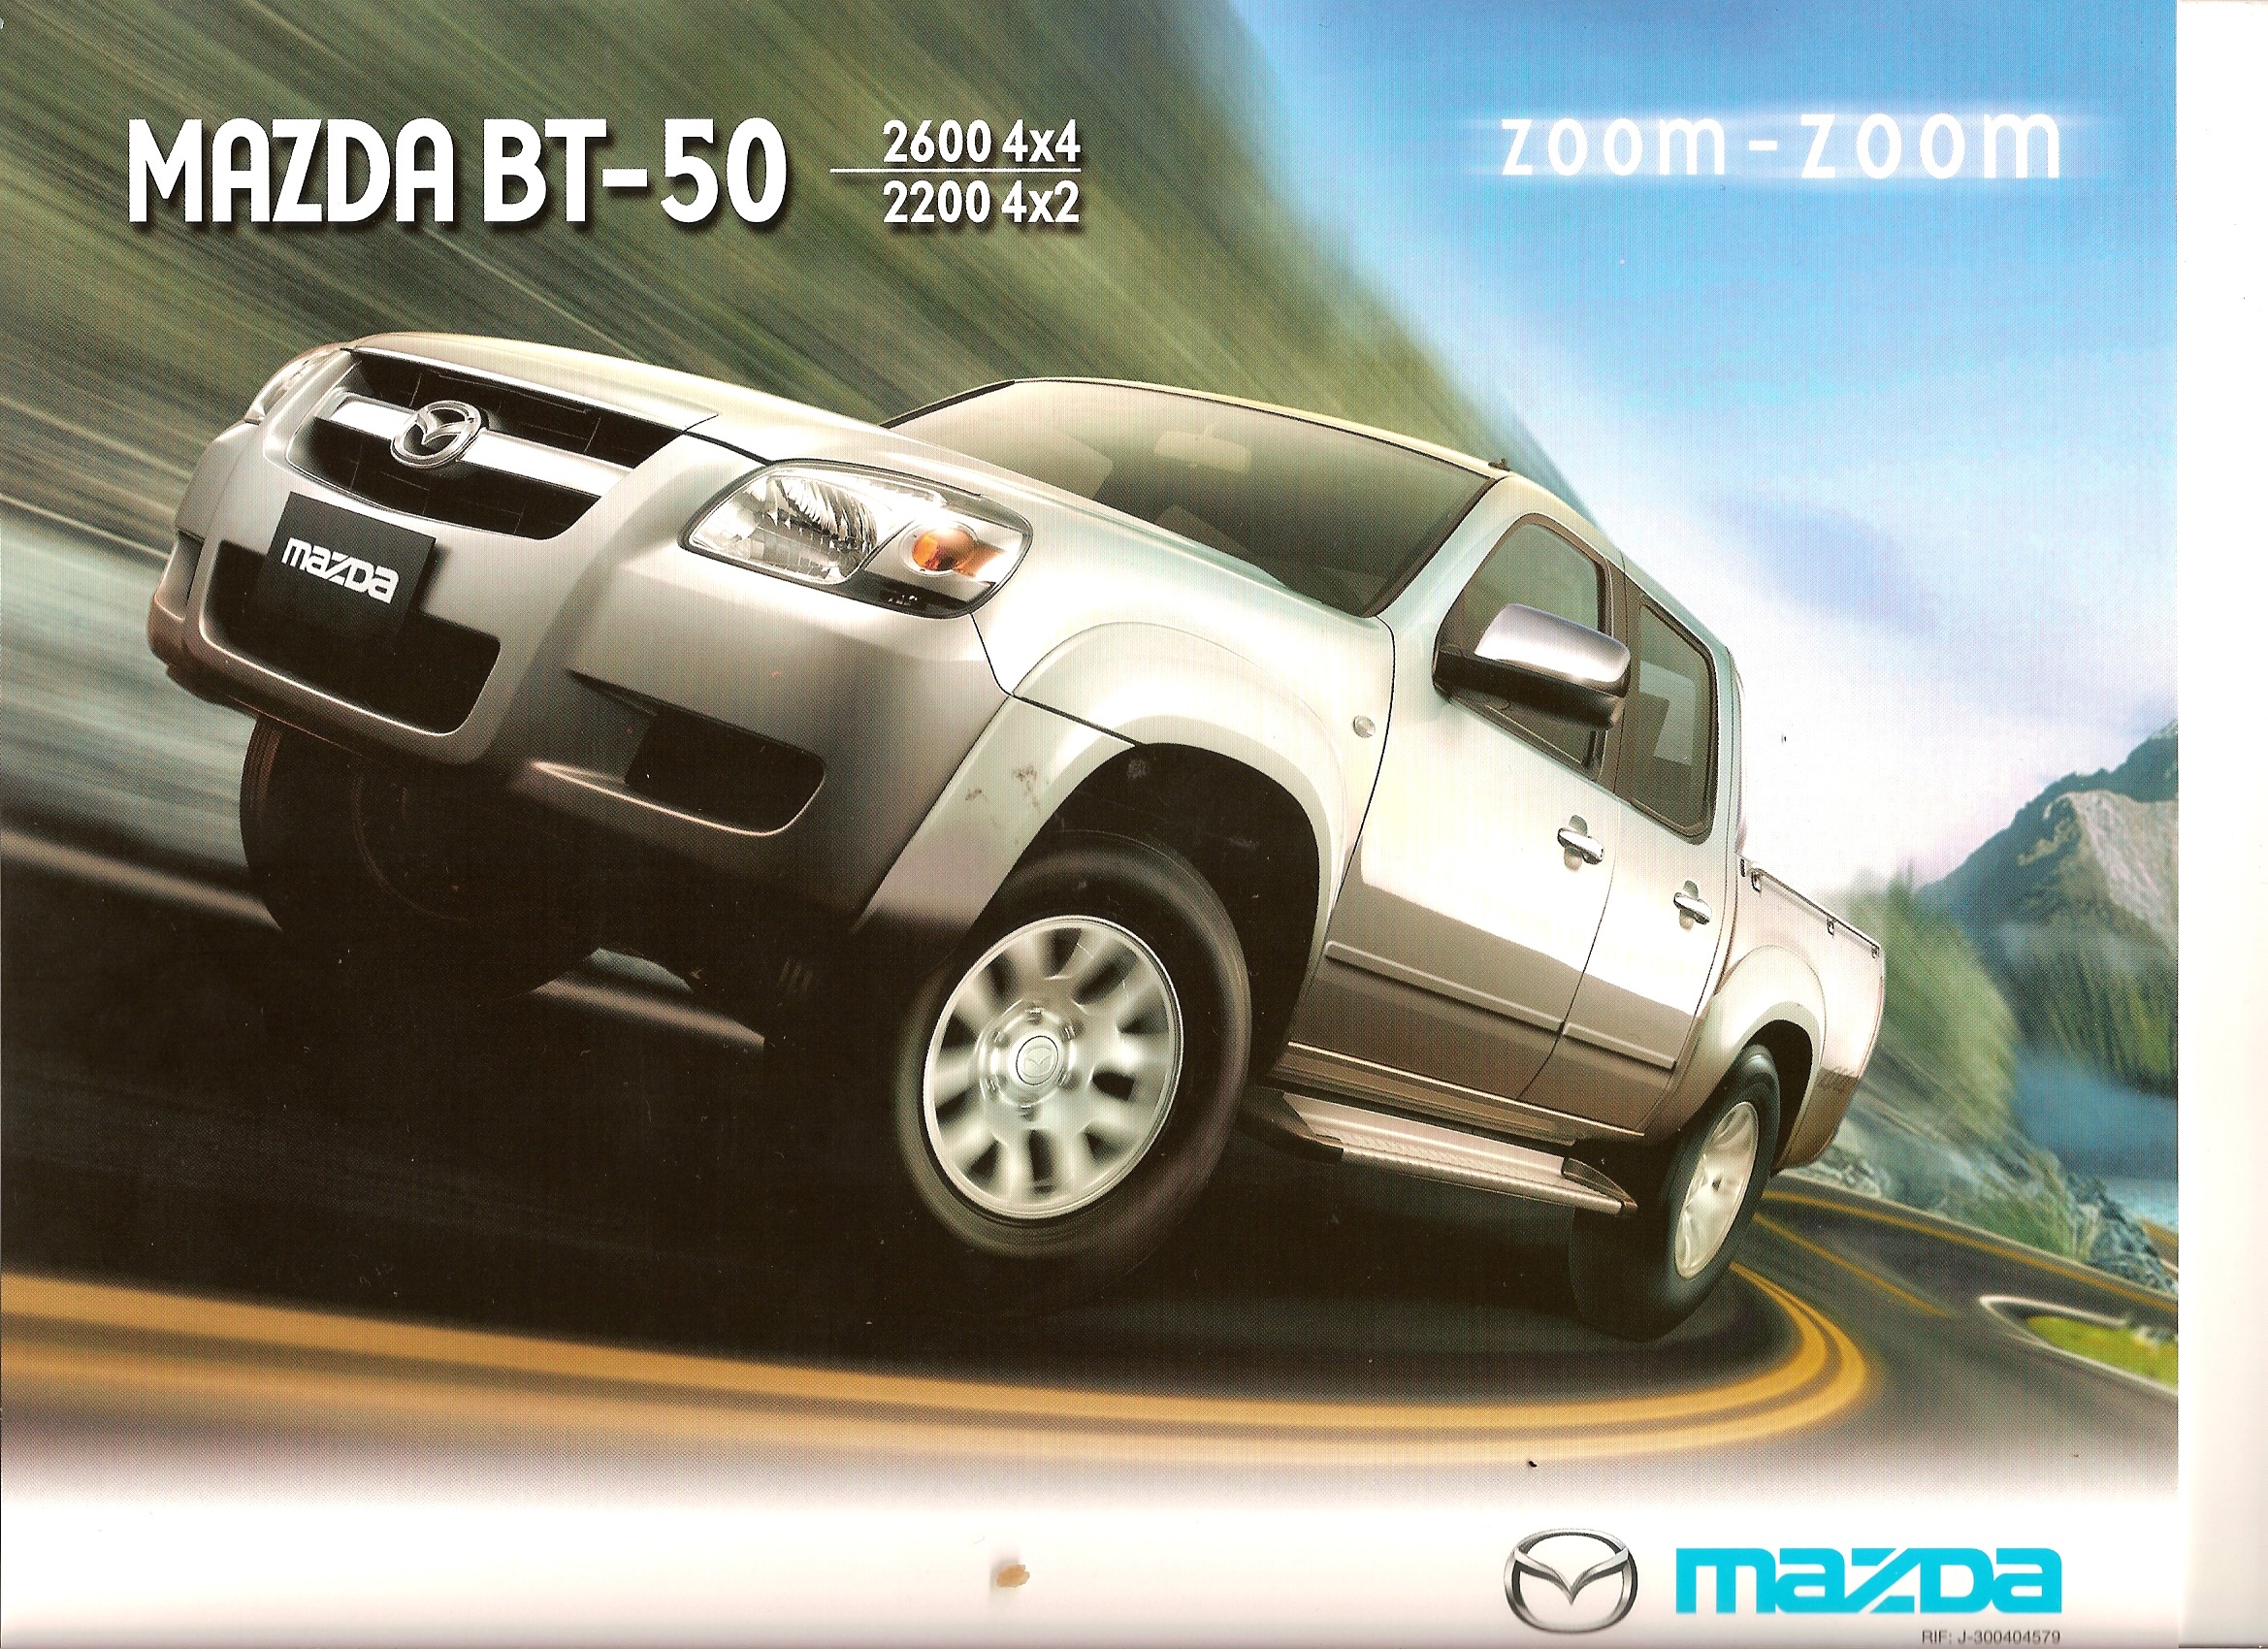 Mazda BT-50 2008 1 | Flickr - Photo Sharing!